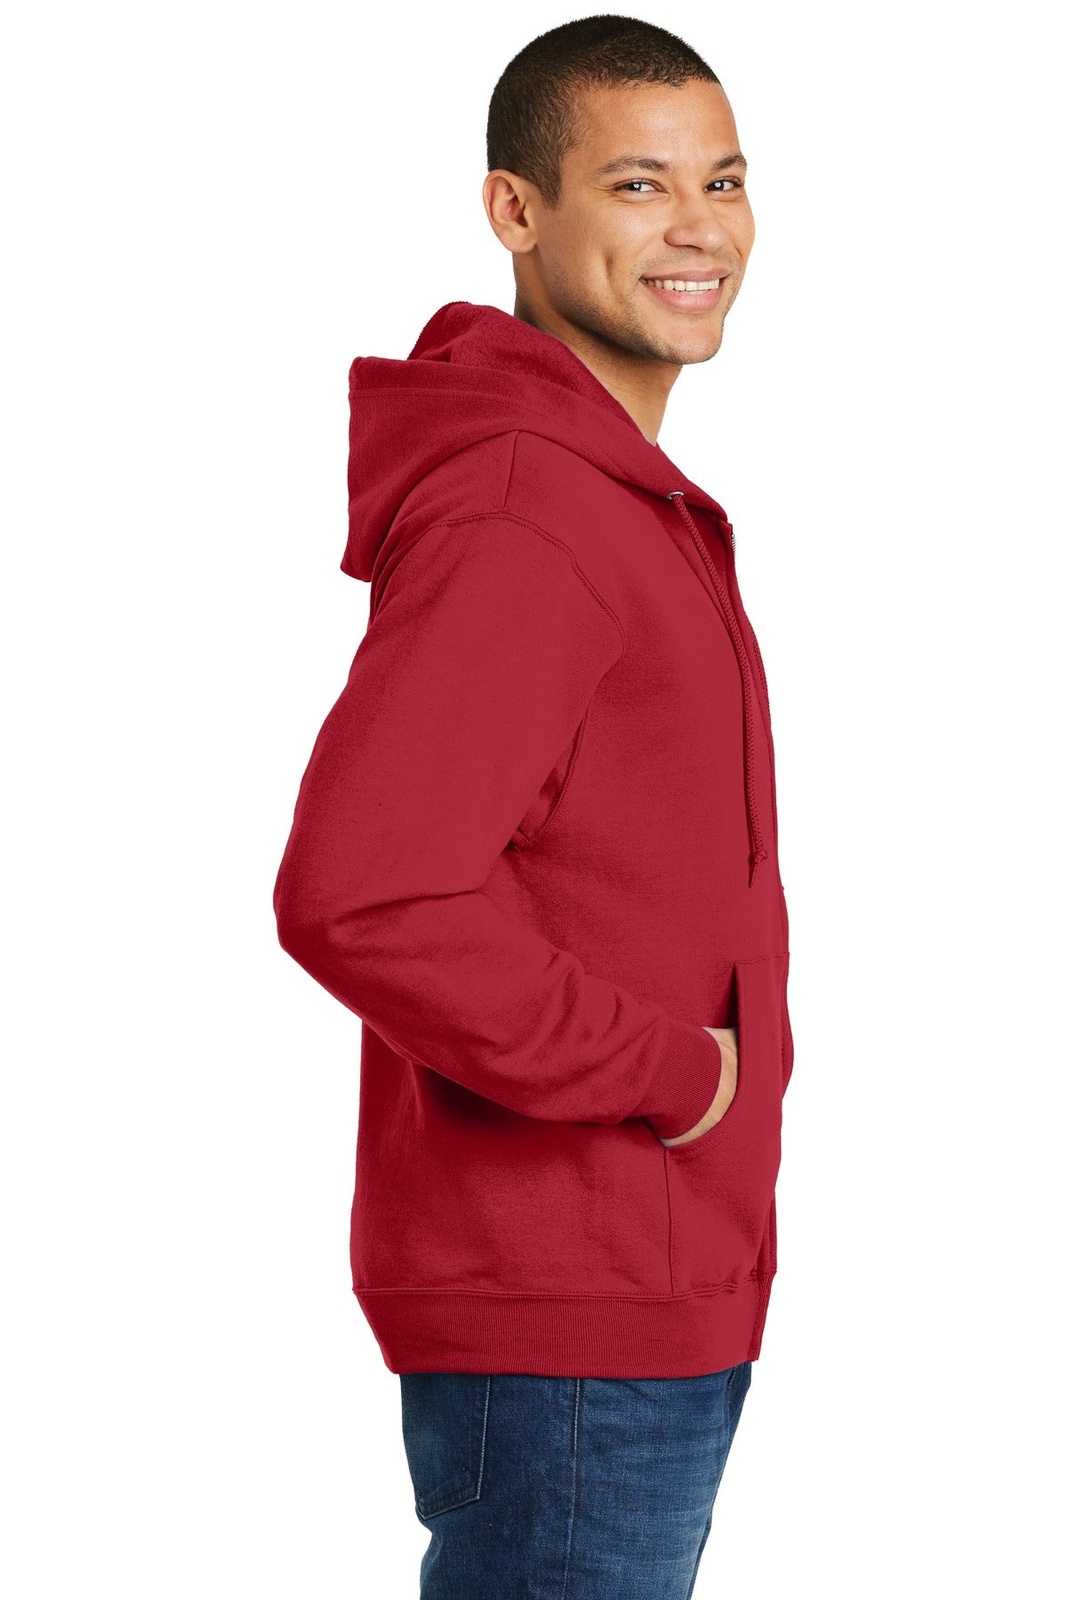 Jerzees 993M Nublend Full-Zip Hooded Sweatshirt - True Red - HIT a Double